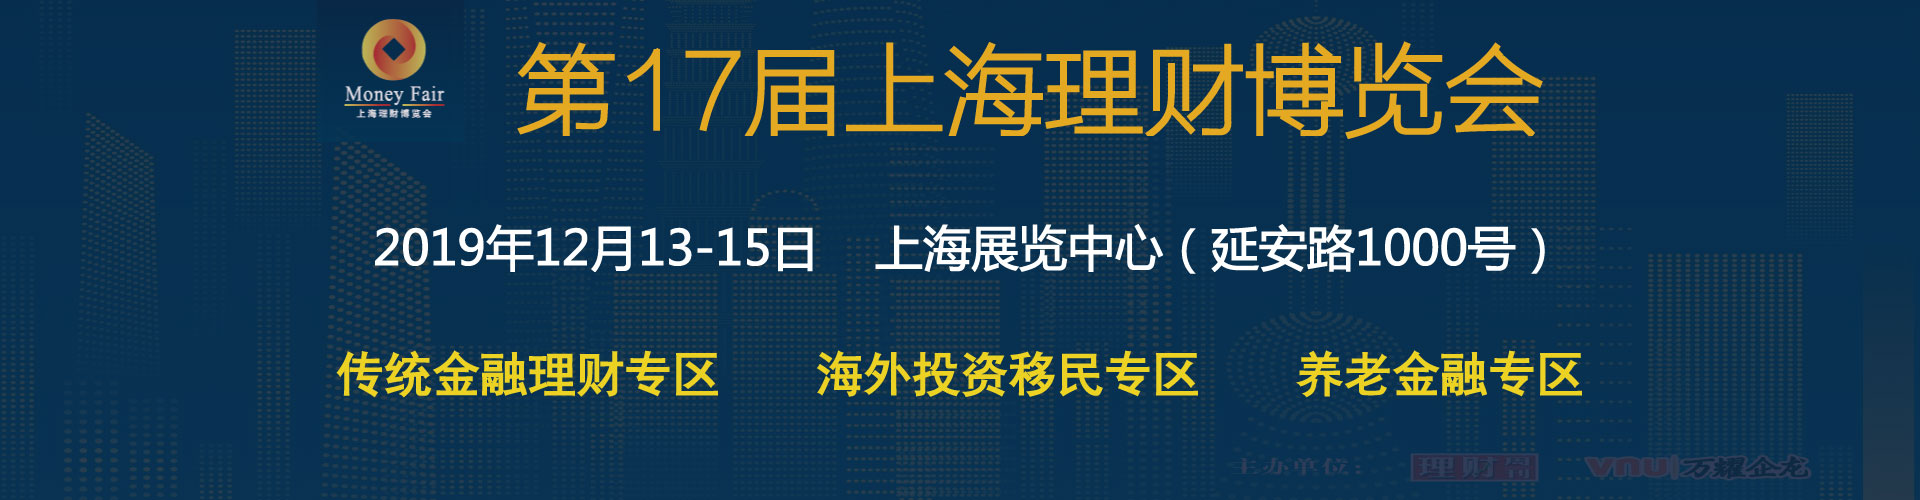 2019上海信托产品展览会